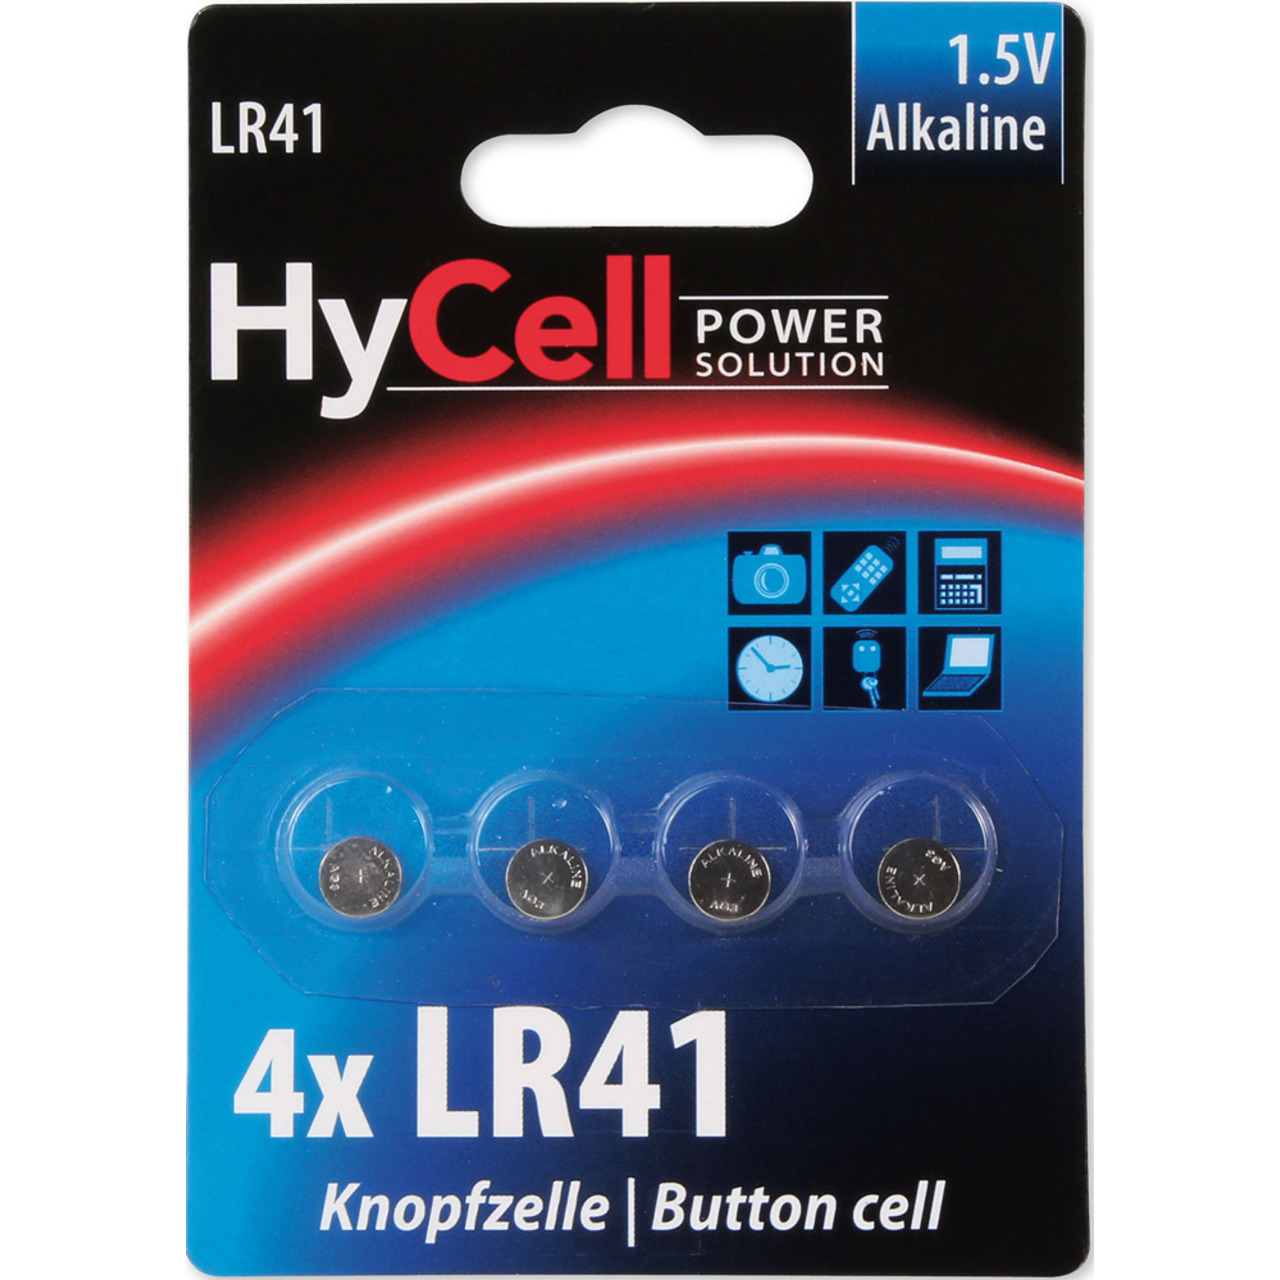 Hycell Alkaline-Knopfzelle LR 41- 1-5 V- 4er Blister